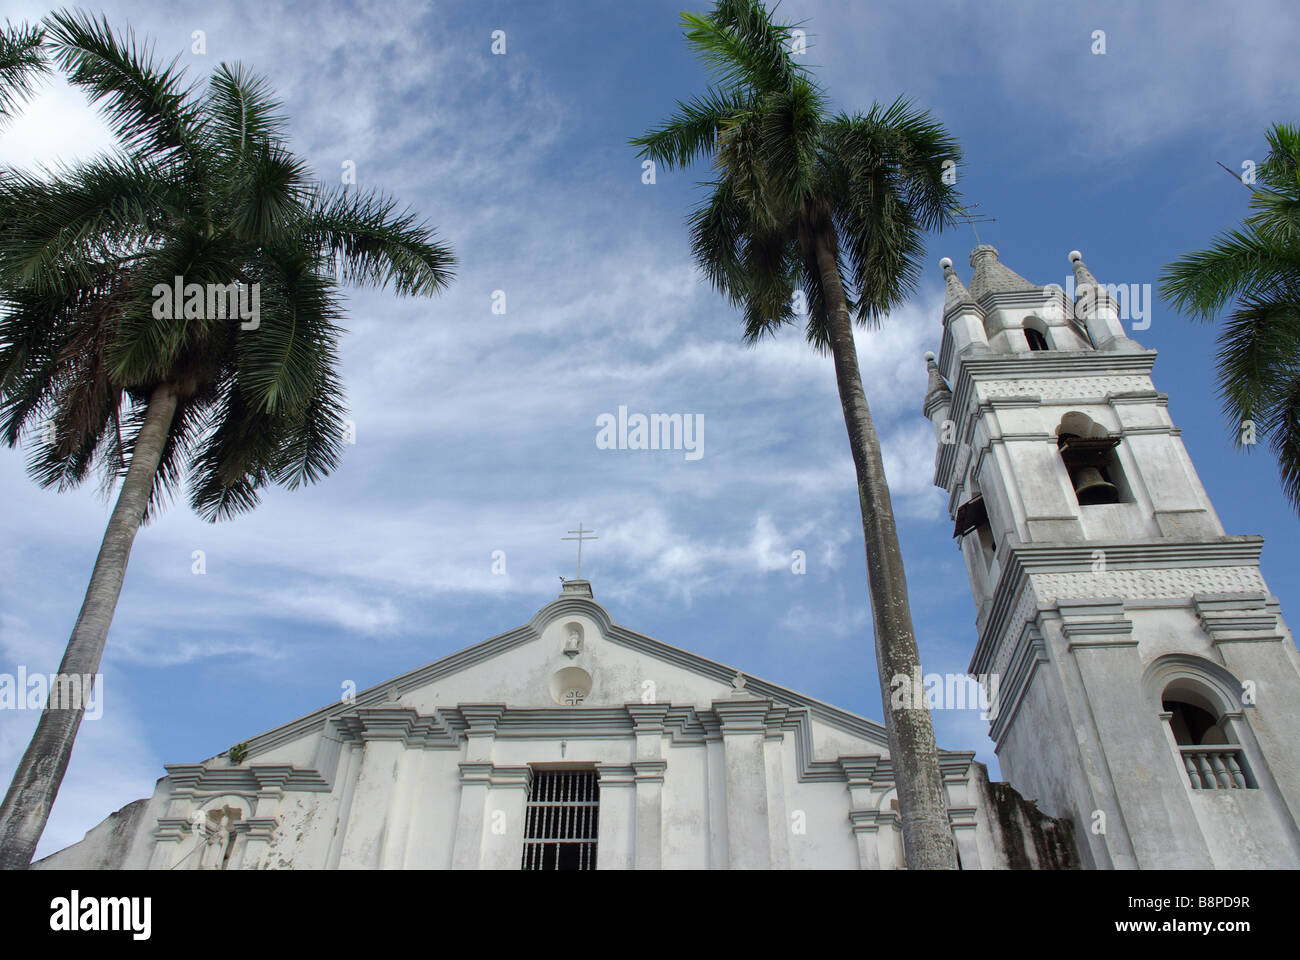 Iglesia de San Atanacio, Villa de Los Santos, Los Santos Province, Panama Stock Photo